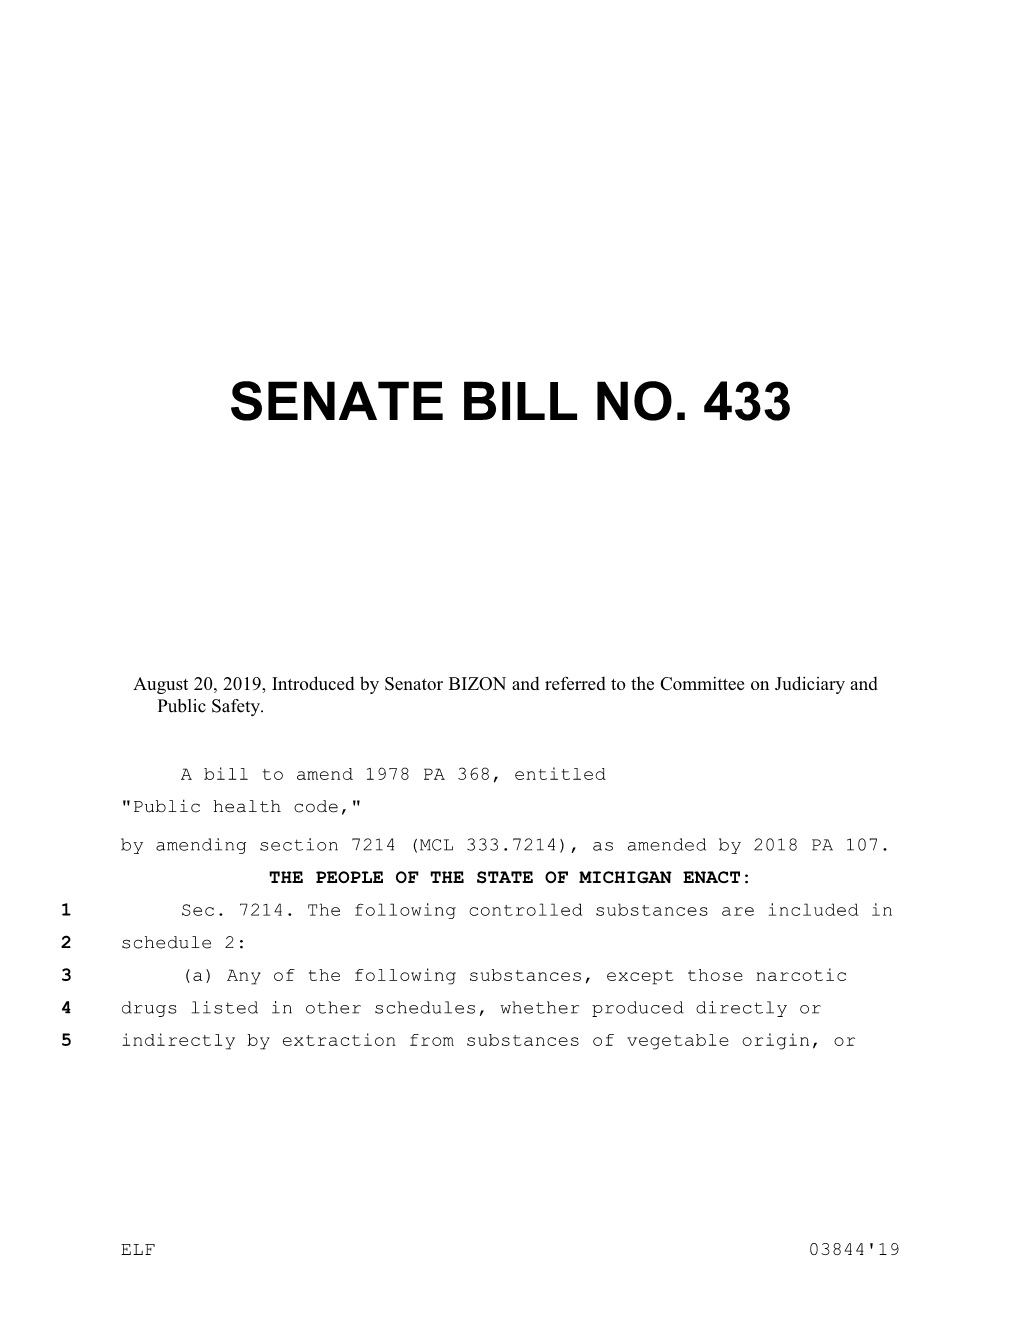 Senate Bill No. 433